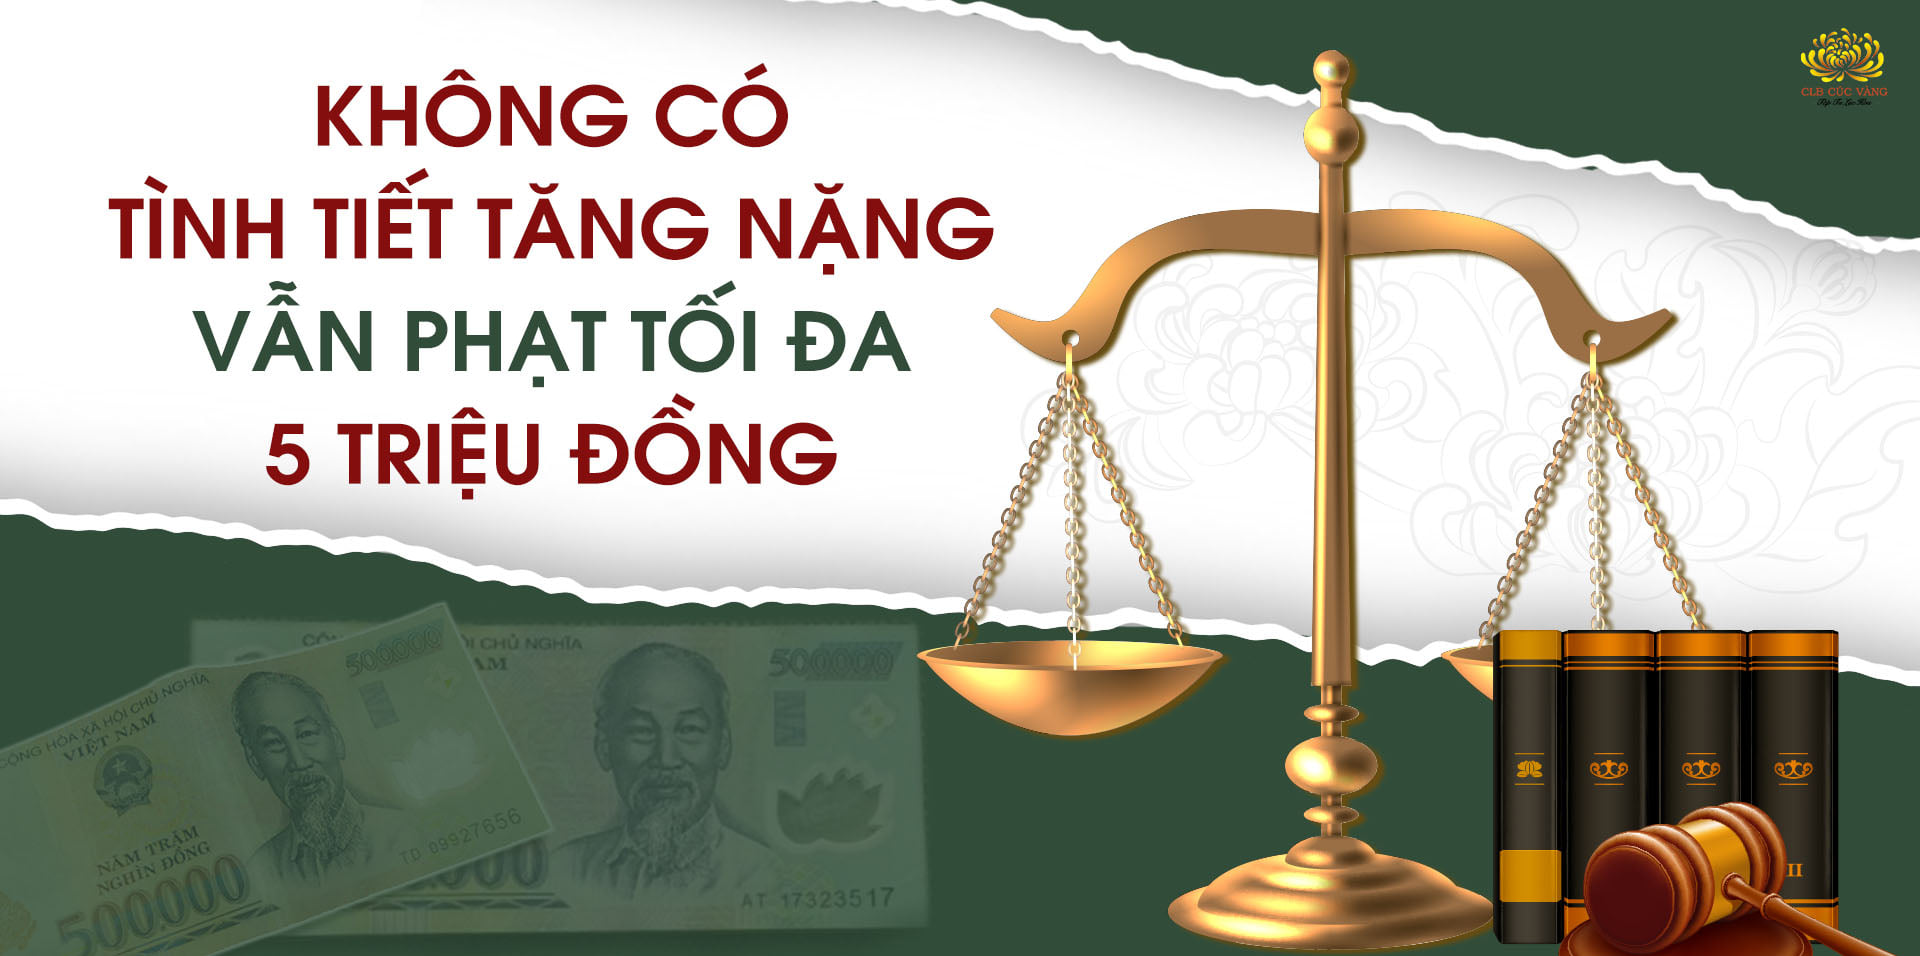 Phần 12: Tường thuật phiên tòa sơ thẩm - Bà Phạm Thị Yến kiện Chủ tịch UBND phường Quang Trung